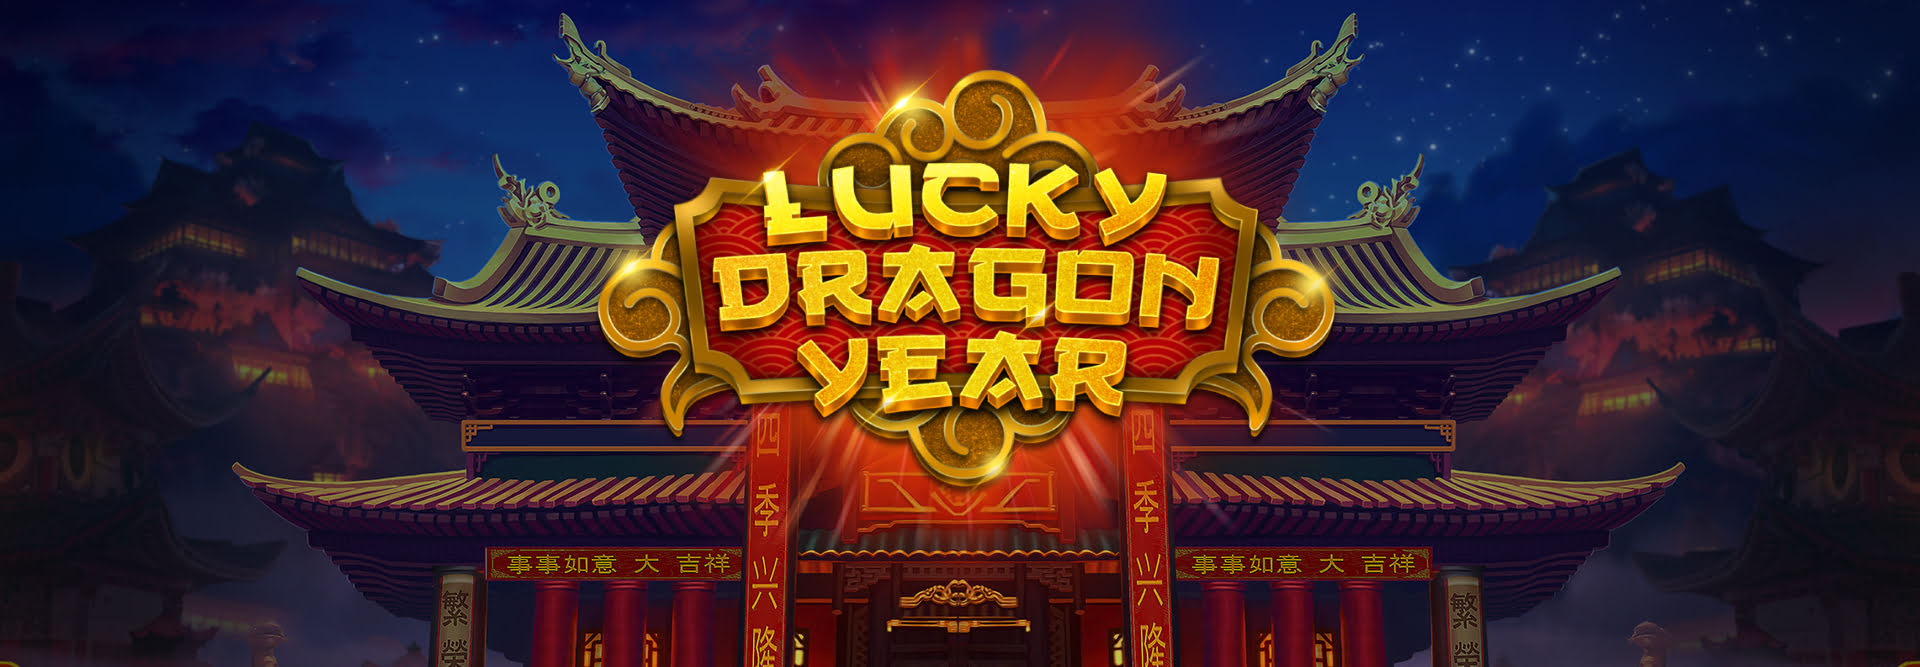 Lucky dragon year logo